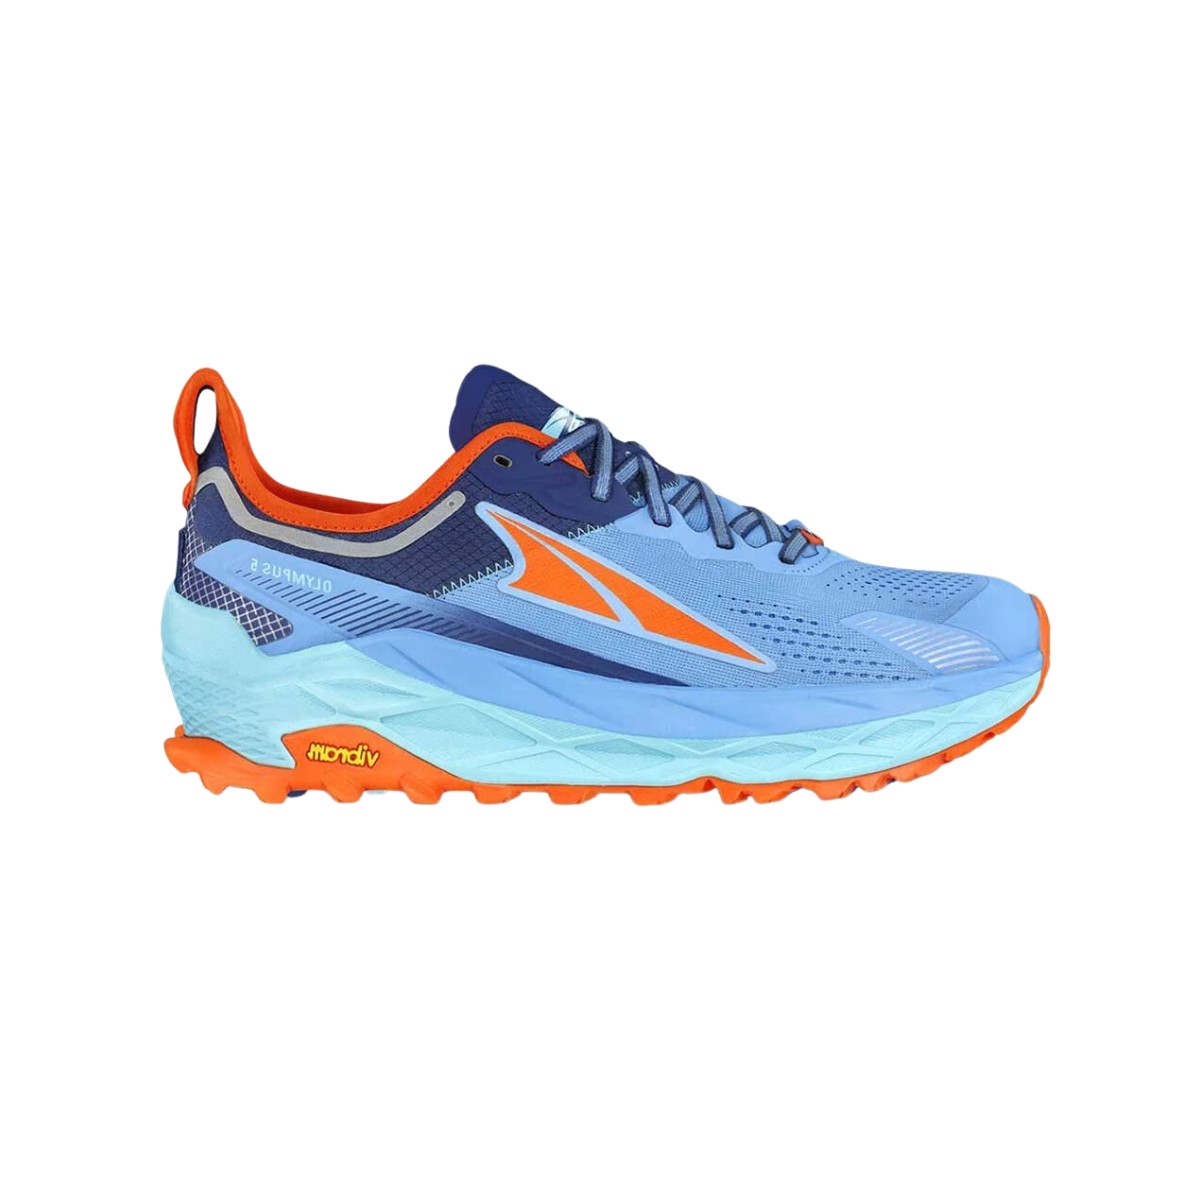 BLAU.DE günstig Kaufen-Altra Olympus 5 Schuhe Blau Orange AW23, Größe 42,5 - EUR. Altra Olympus 5 Schuhe Blau Orange AW23, Größe 42,5 - EUR <![CDATA[Eigenschaften Altra Olympus 5 Trail-Schuhe
 Die Altra Olympus 5-Schuhe sind ein Trailrunning-Modell, bei dem 